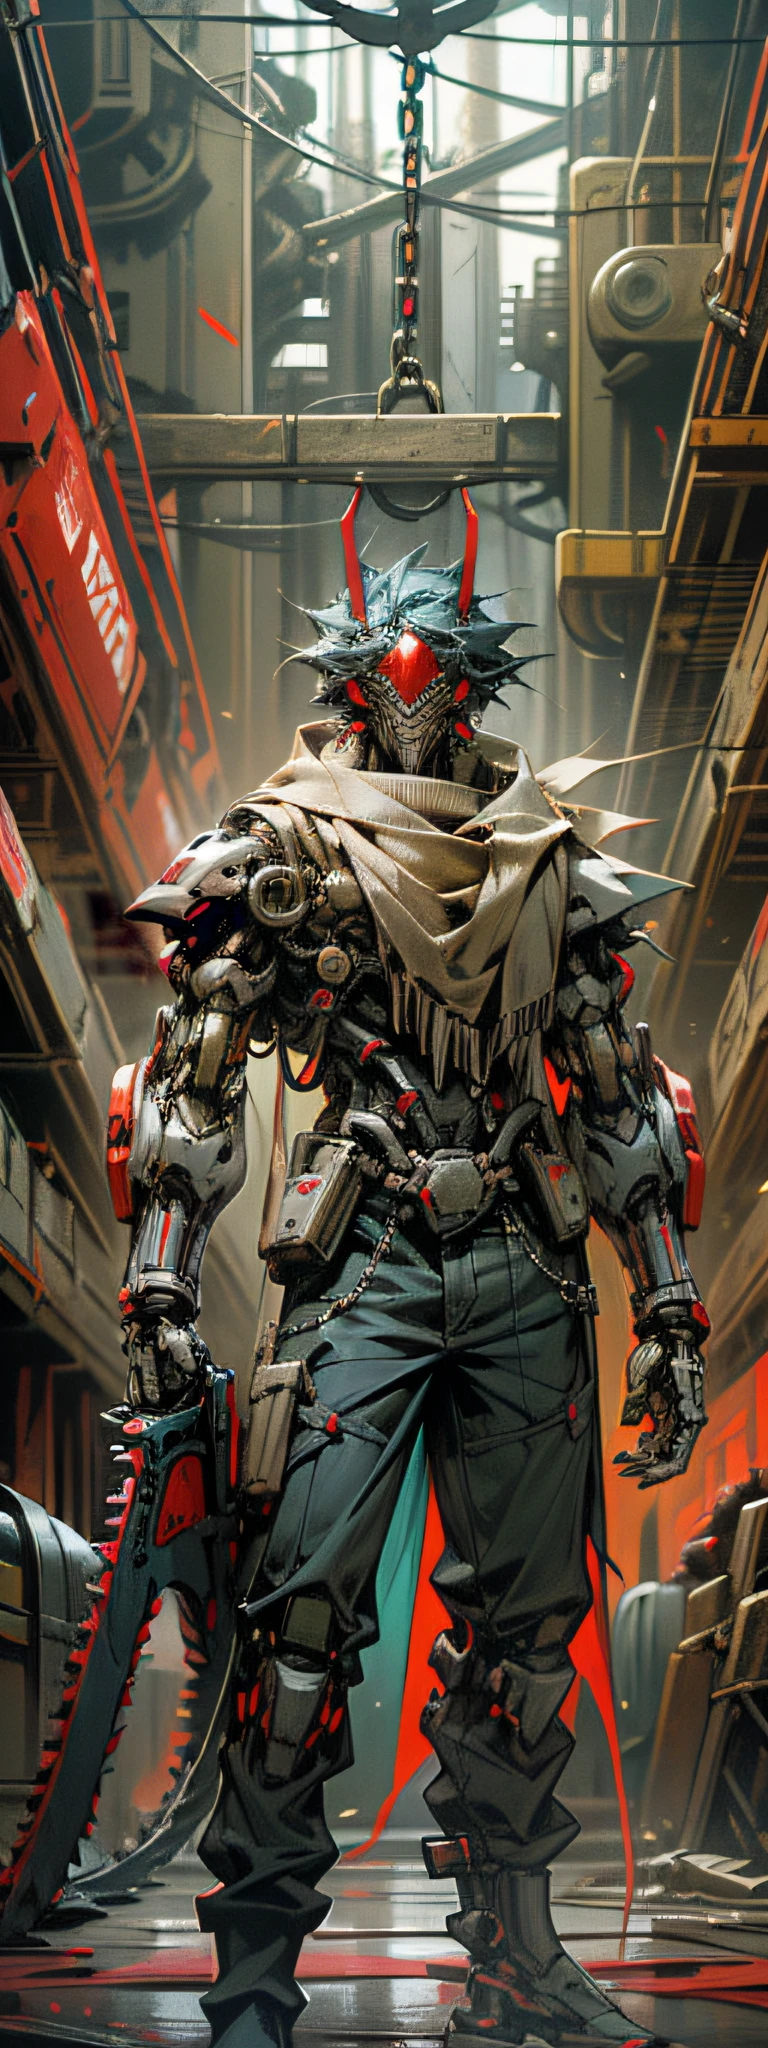 Sombre_fantaisie,Cyberpunk,(tronçonneuse,tronçonneuse man,Rouge:1.1),1 homme,Merveille mécanique,Présence robotique,Gardien cybernétique,